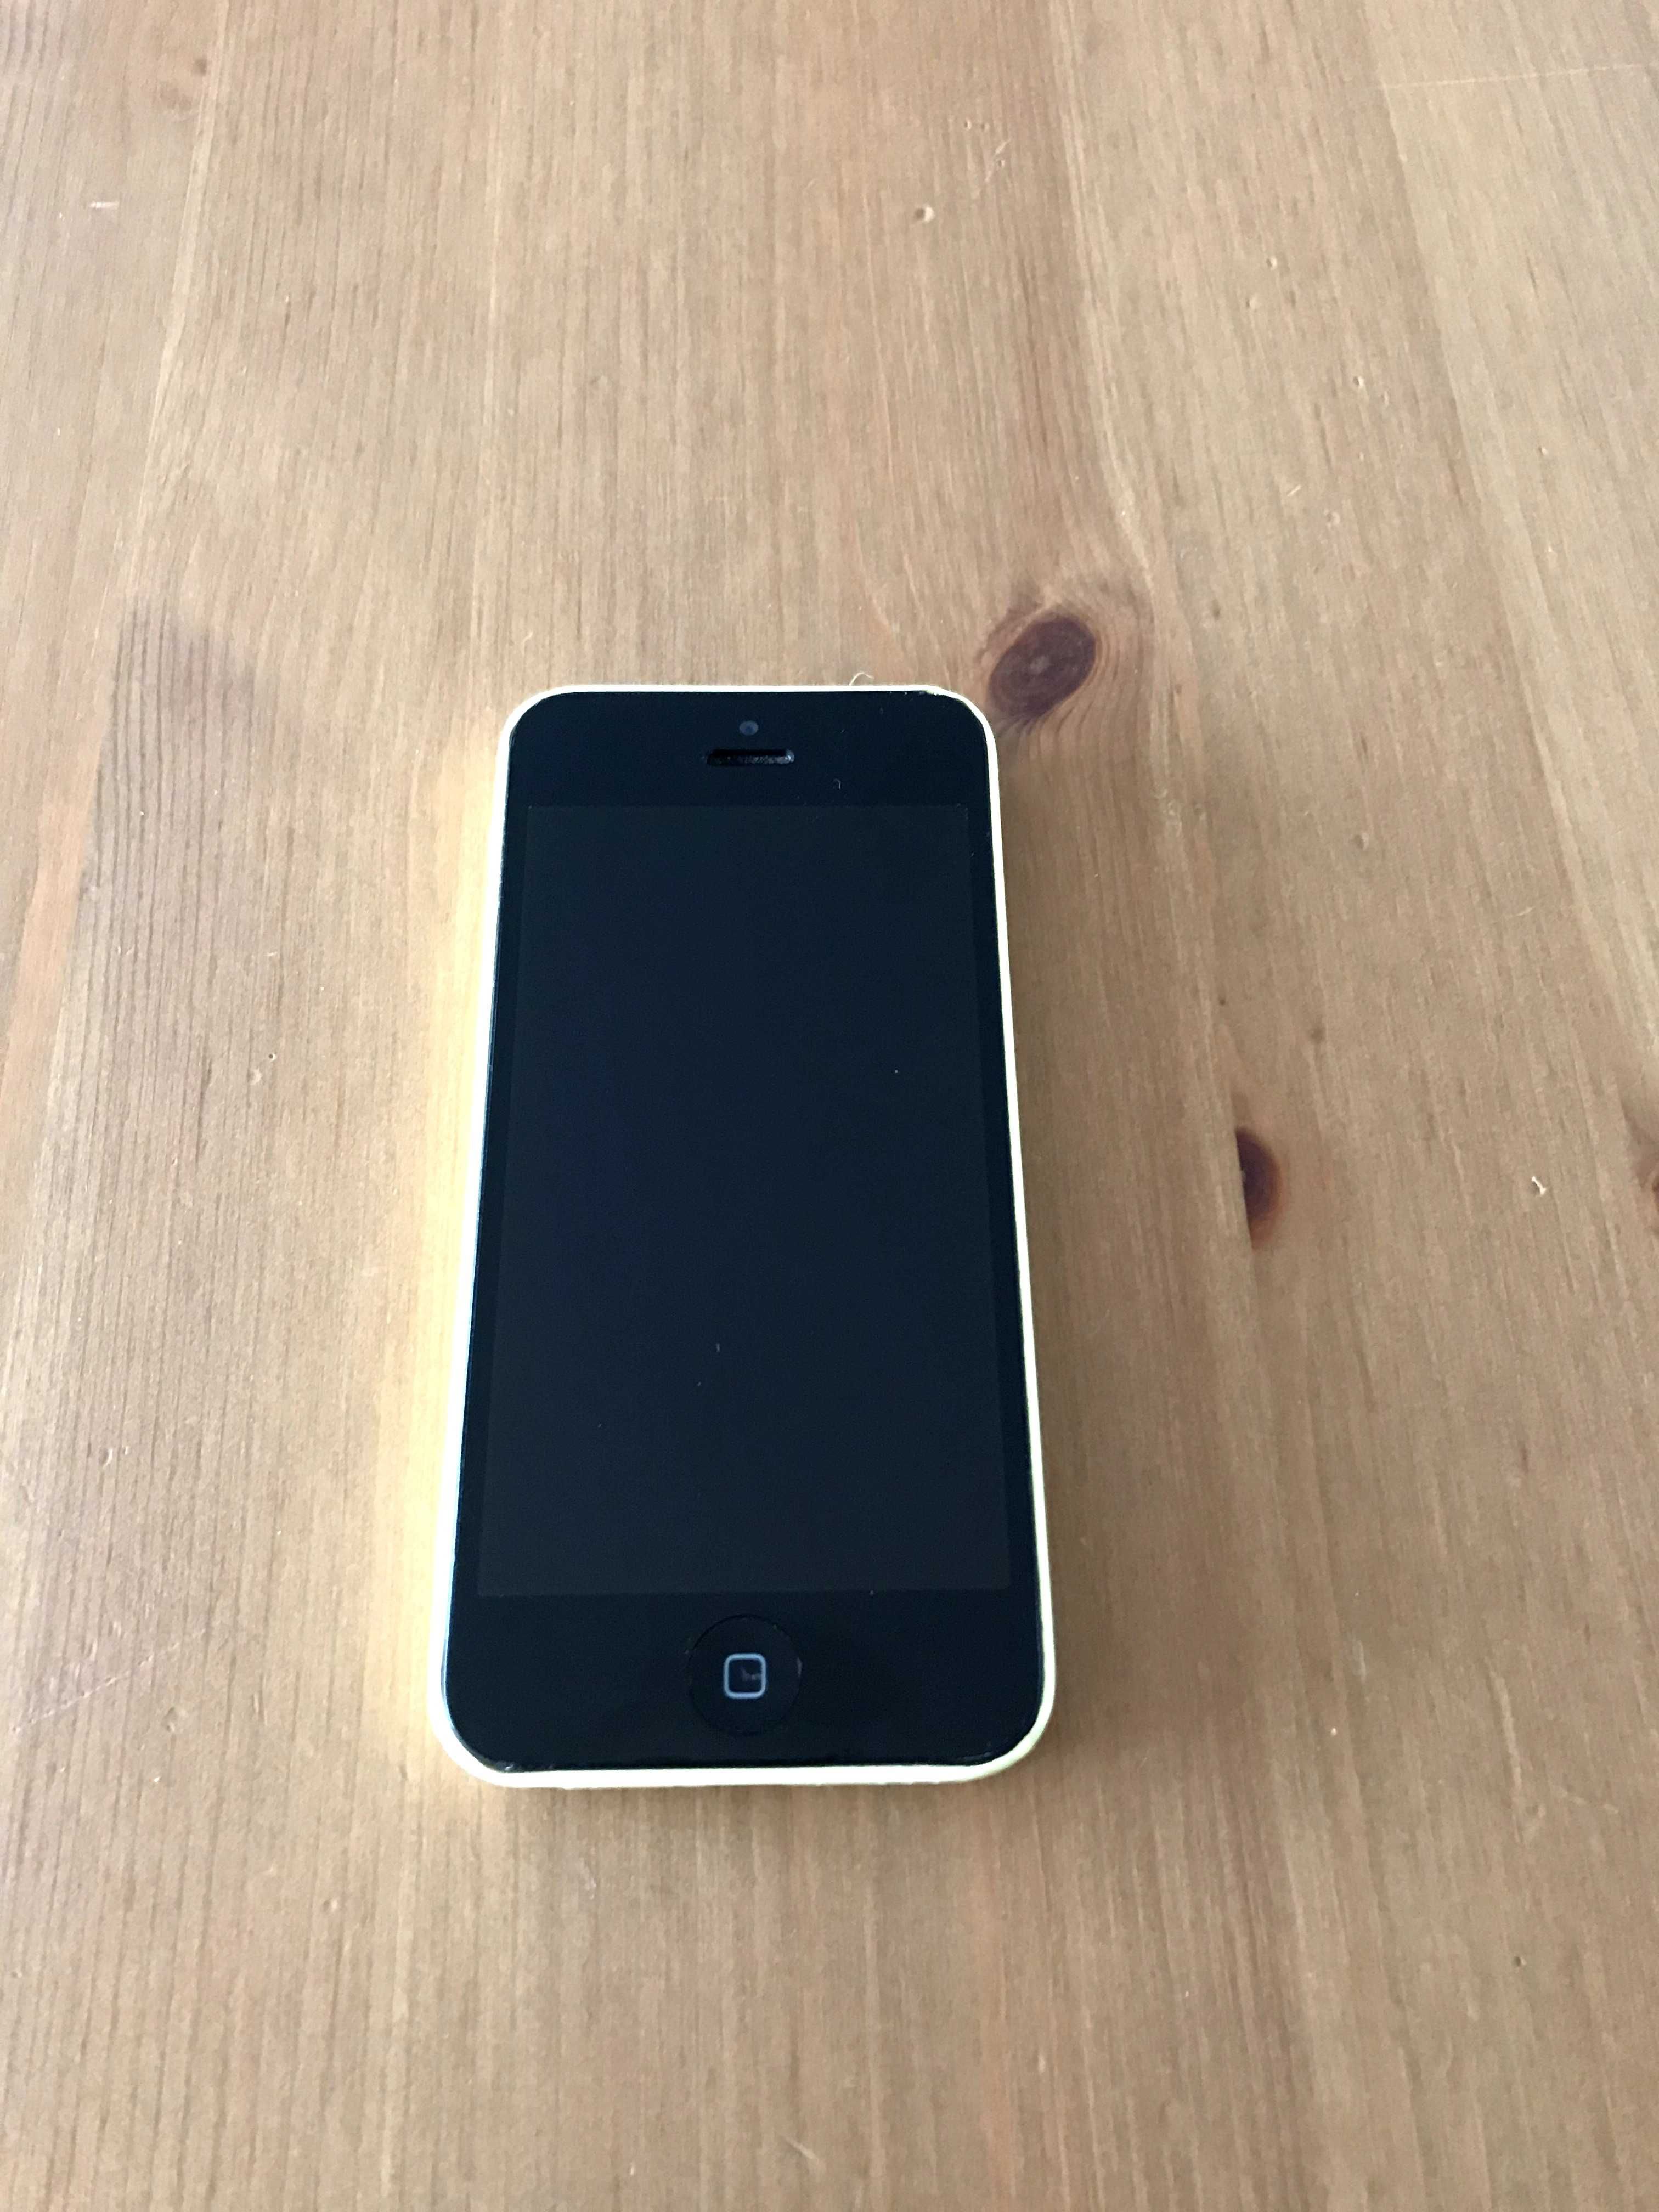 iPhone 5c - 32GB (desbloqueado)